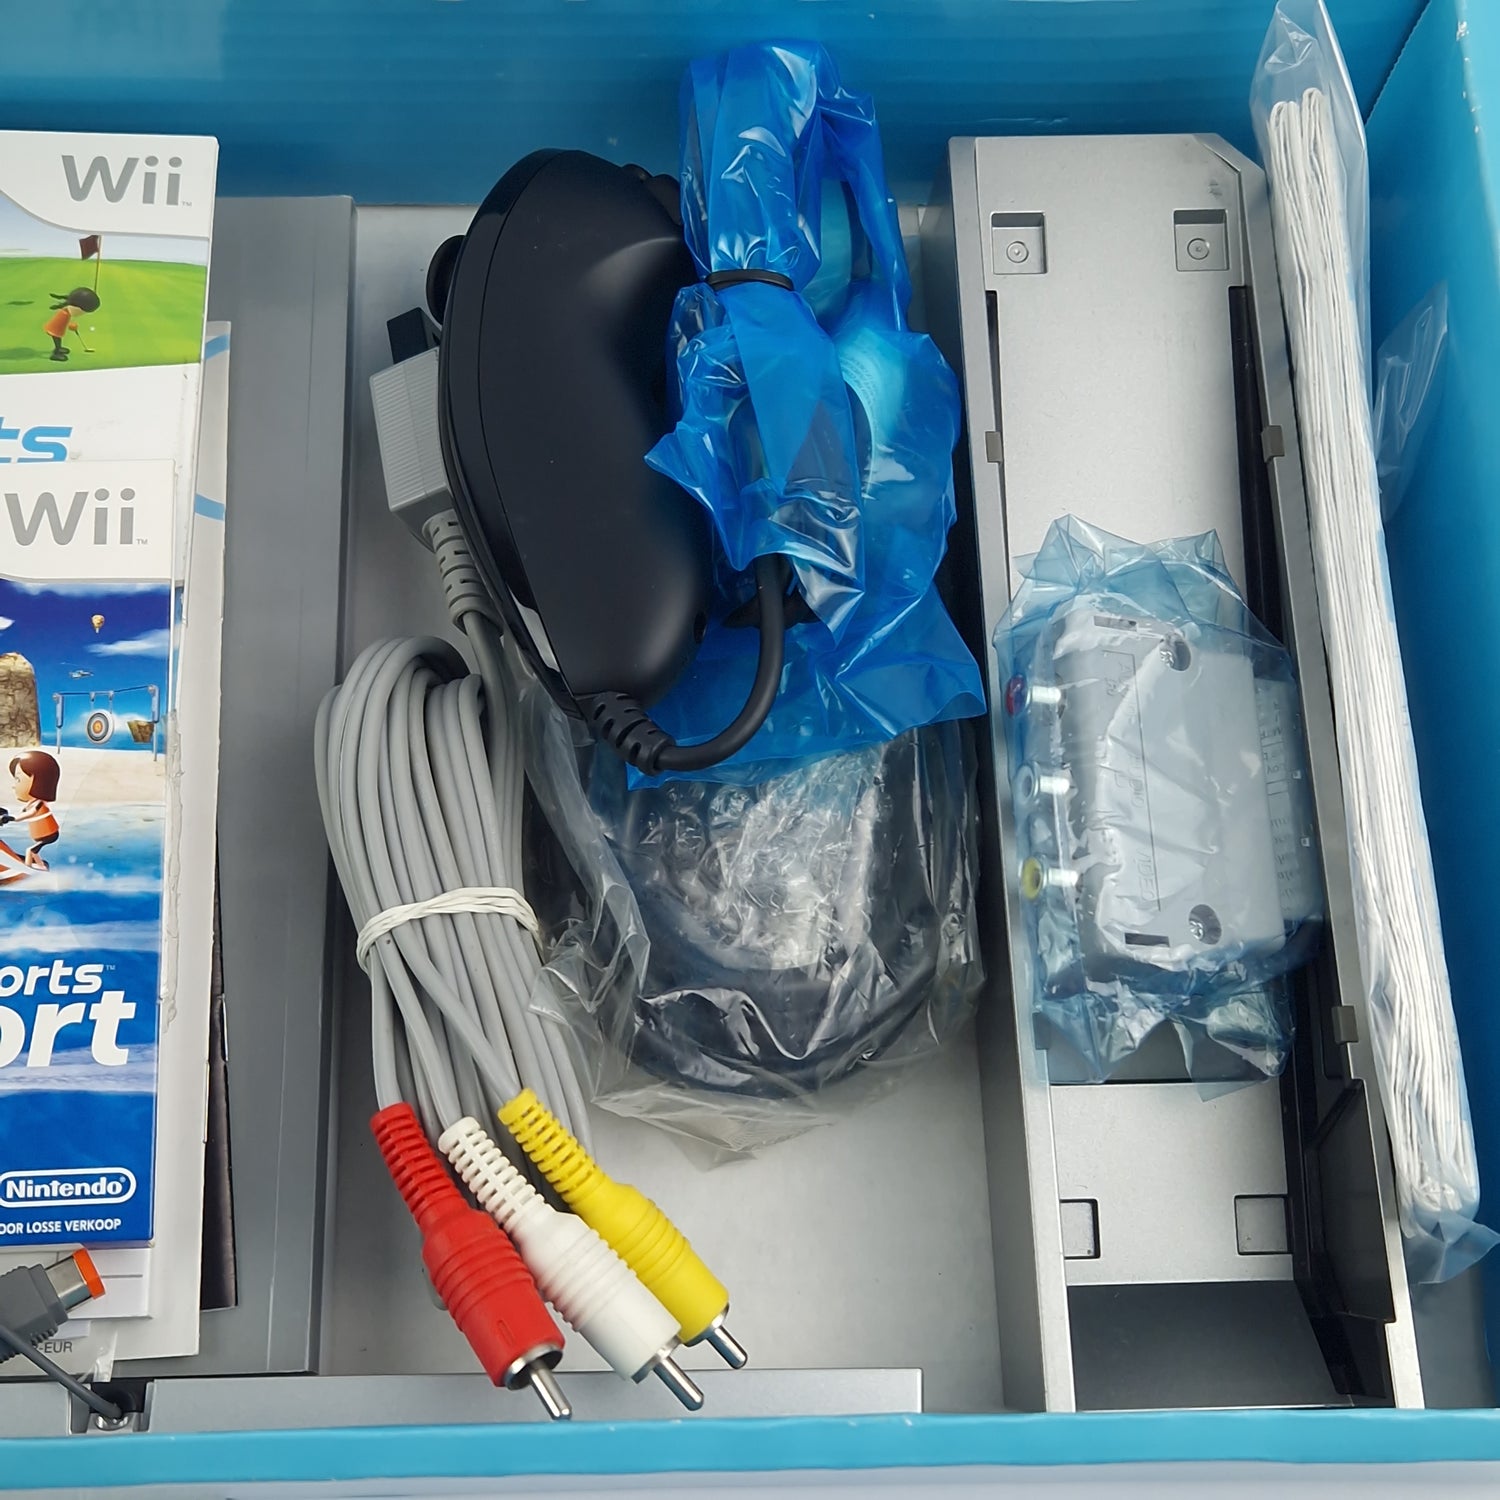 Nintendo Wii Sports Resort Pak - Konsolen Bundle - PAL Console in OVP